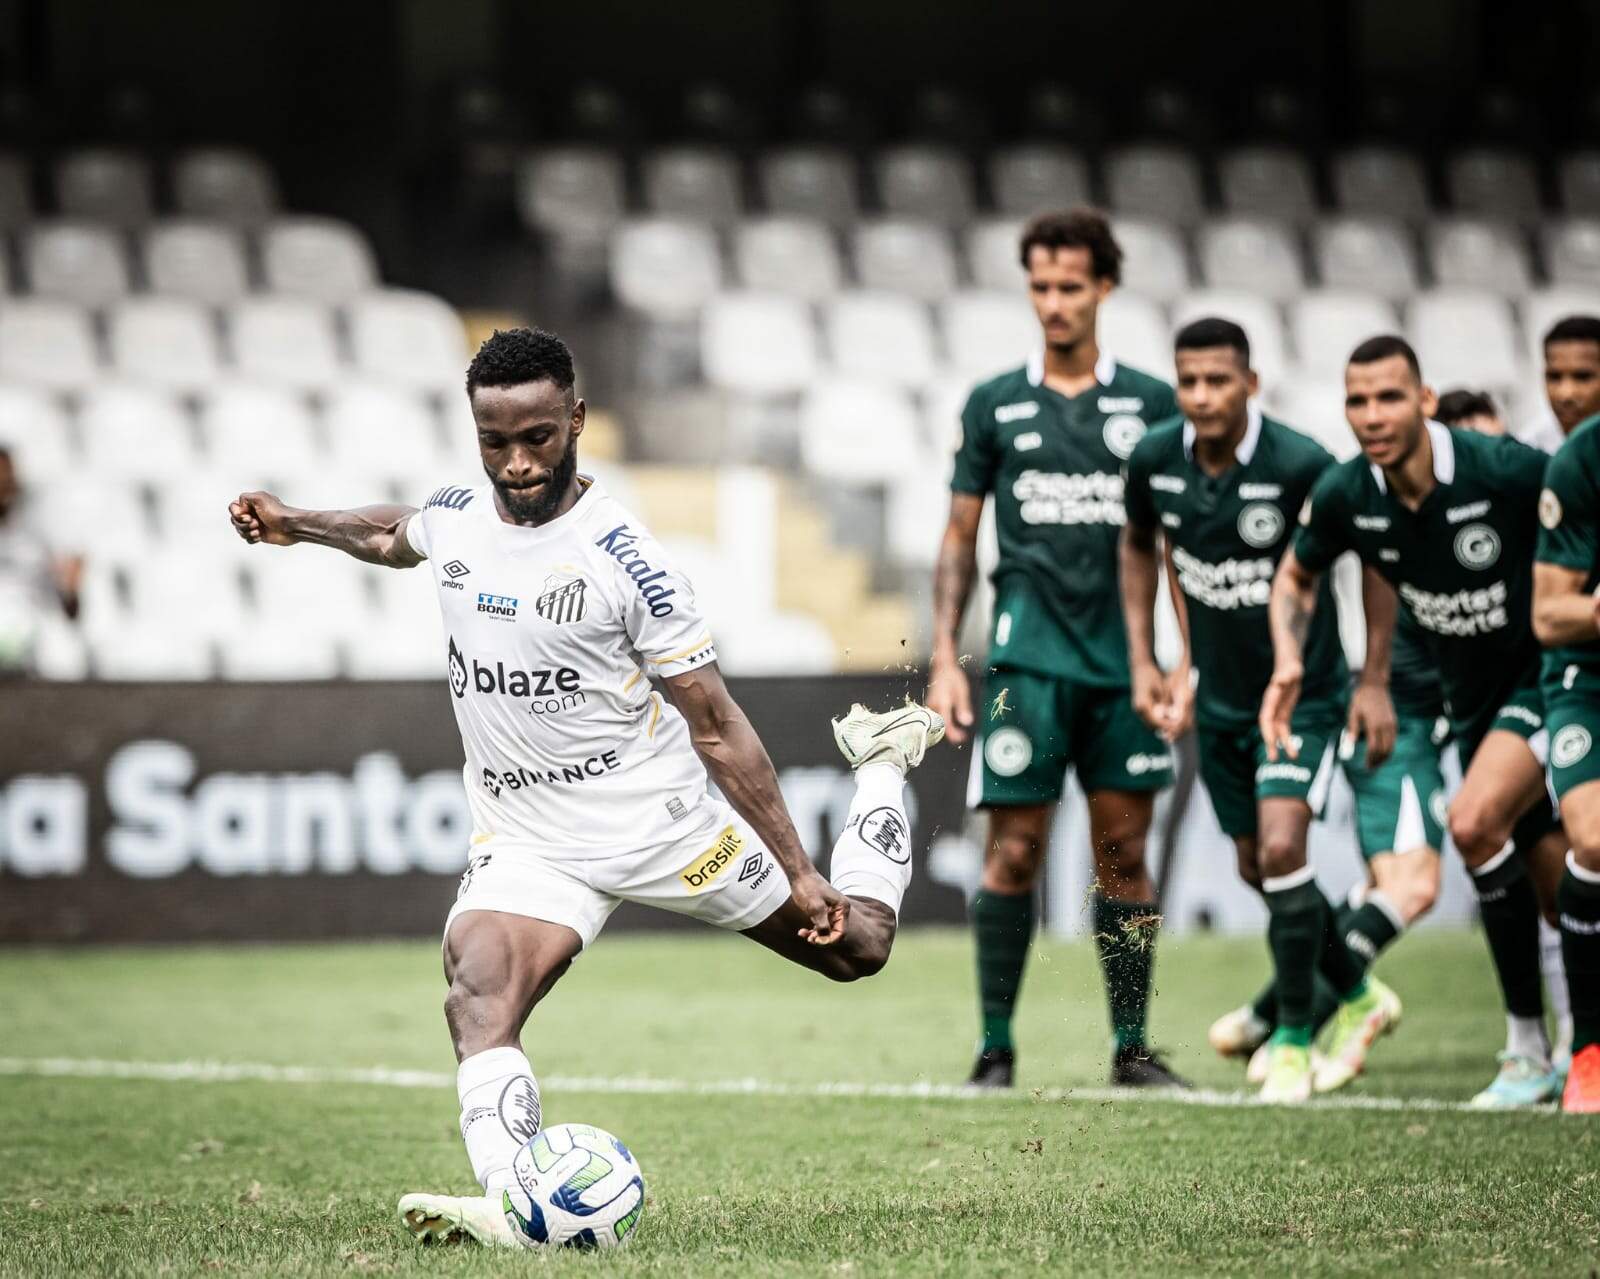 Em jogo de 7 gols, Santos vence Goiás e encerra jejum de 12 partidas sem vitória